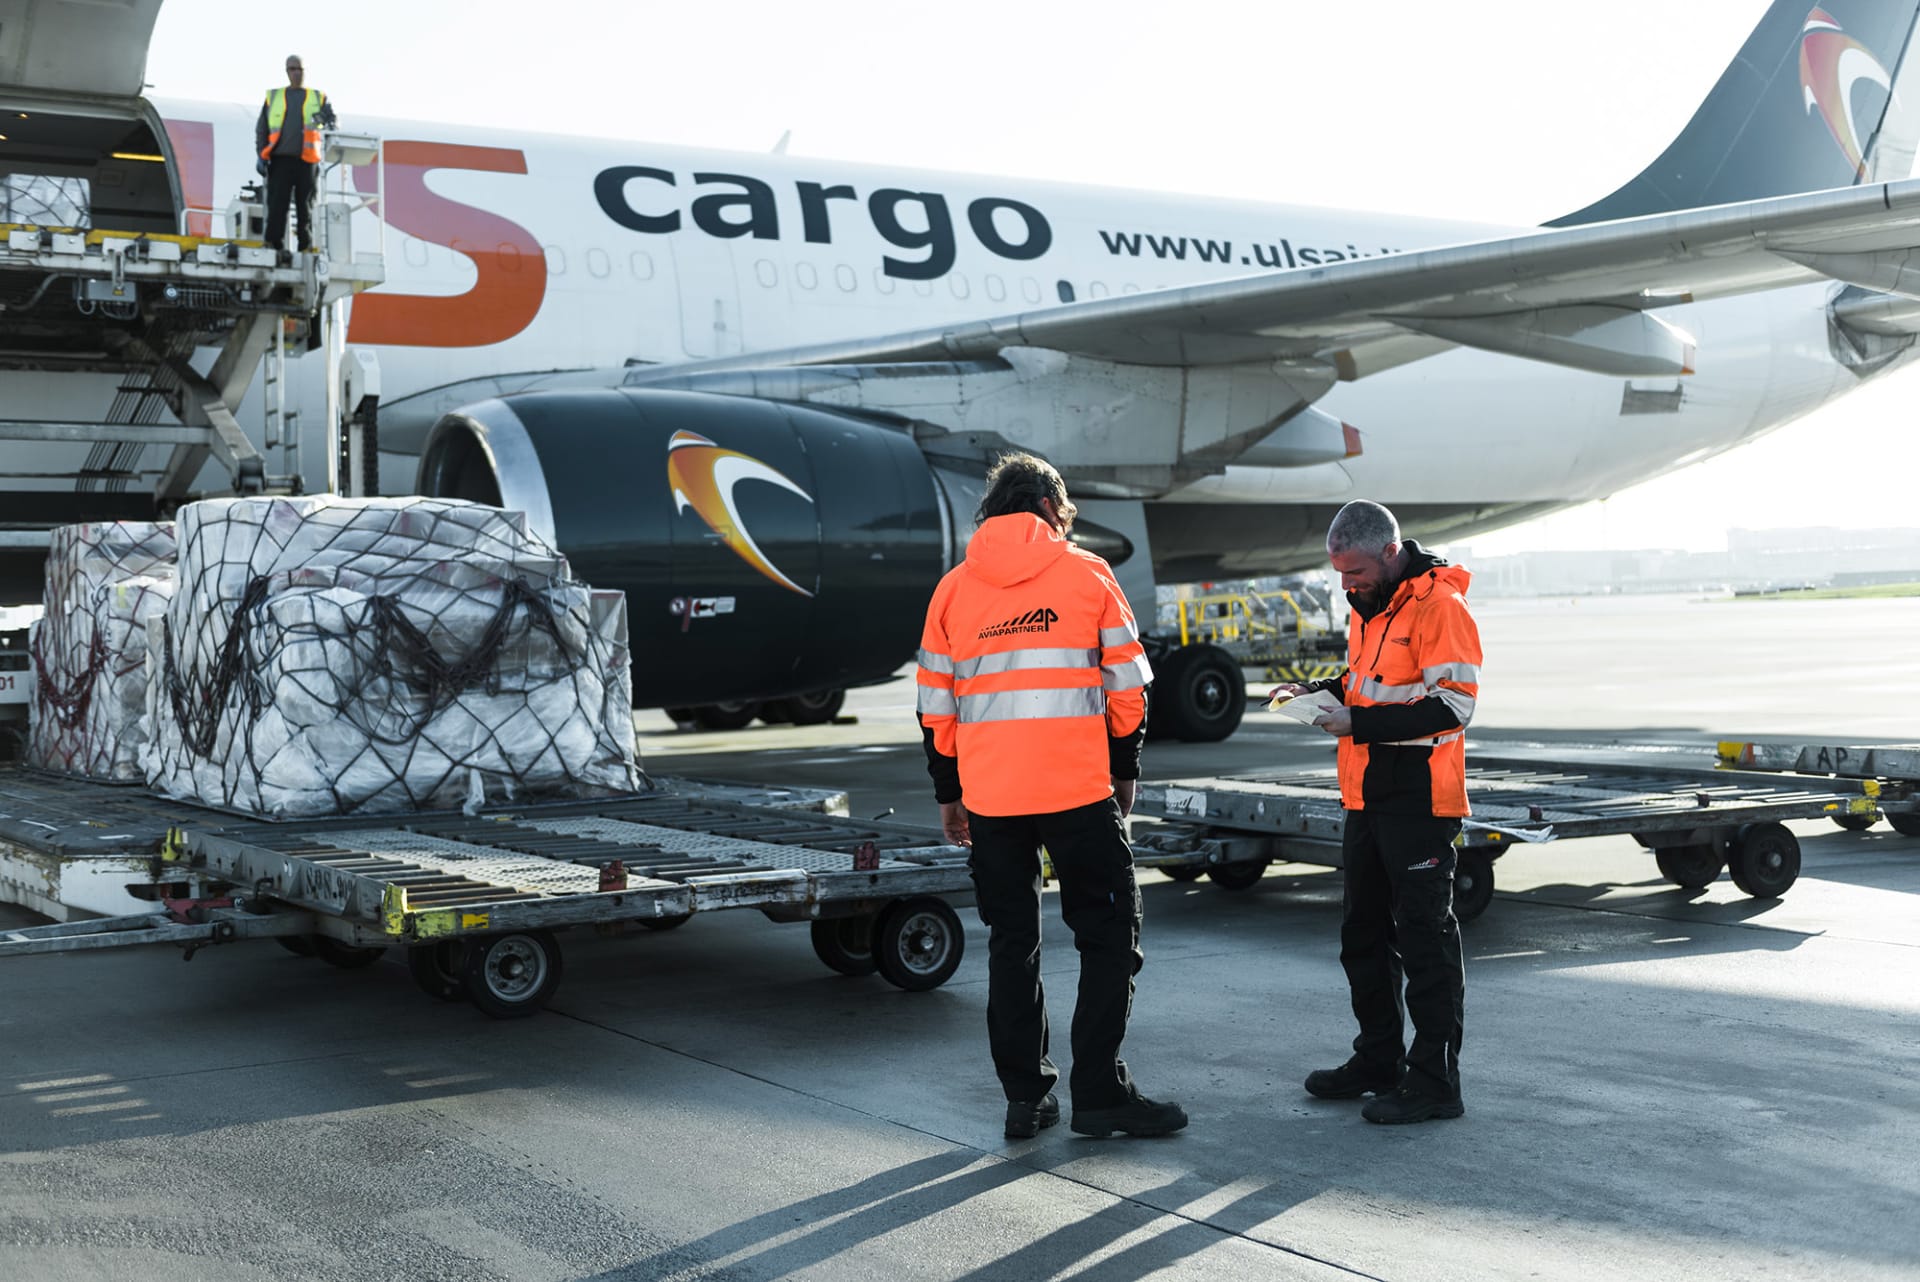 Cargo loading by Aviapartner